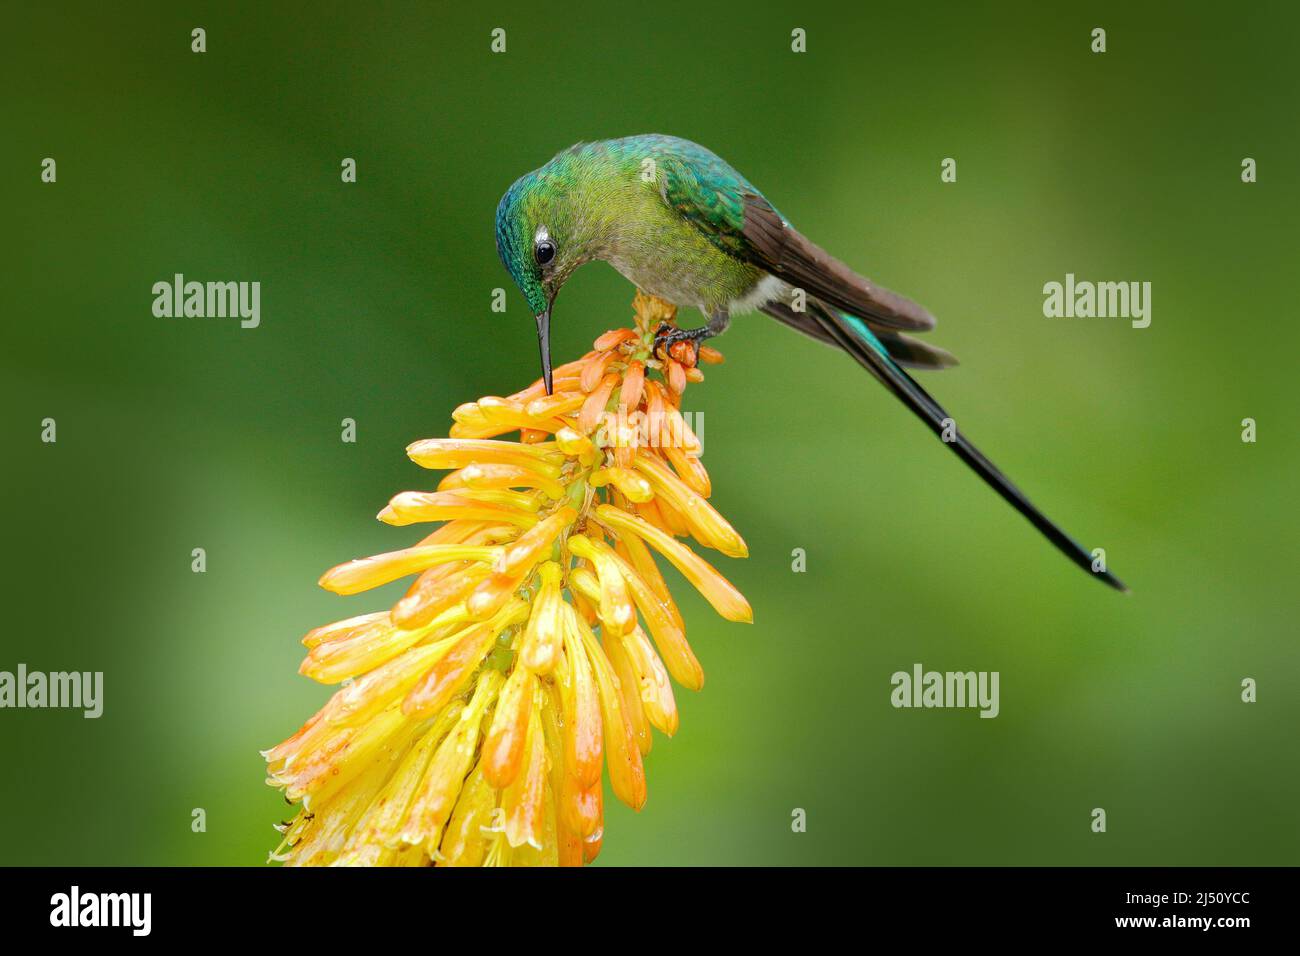 Uccello con fiore. Fauna selvatica Ecuador. Hummingbird Sylph dalla coda lunga che mangia nettare da bellissimo fiore giallo strelicia in Ecuador. Fauna selvatica scena da Foto Stock